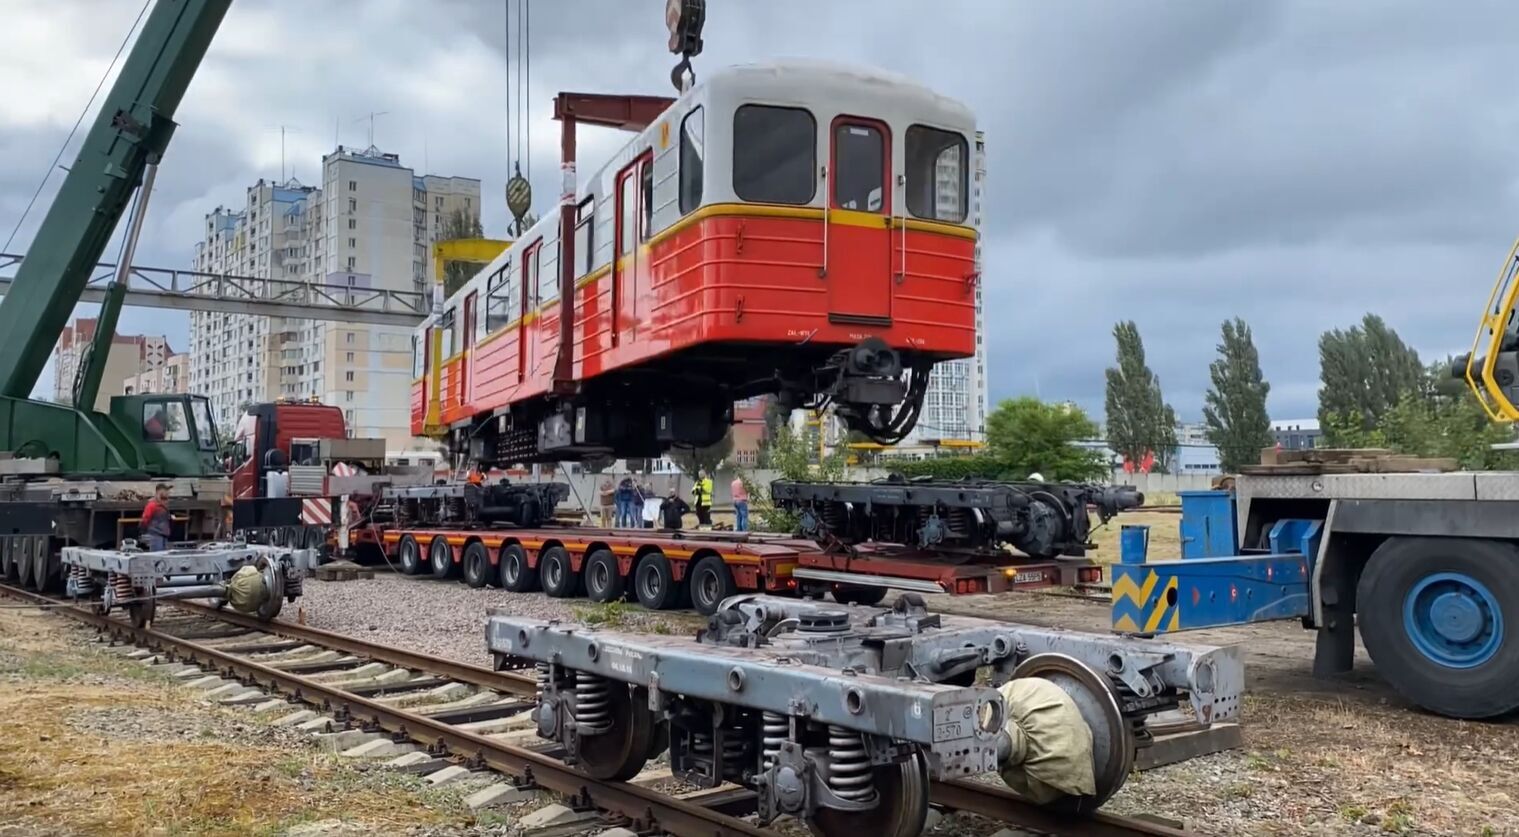 Киев получил очередную партию вагонов метро от варшавской подземки. Видео